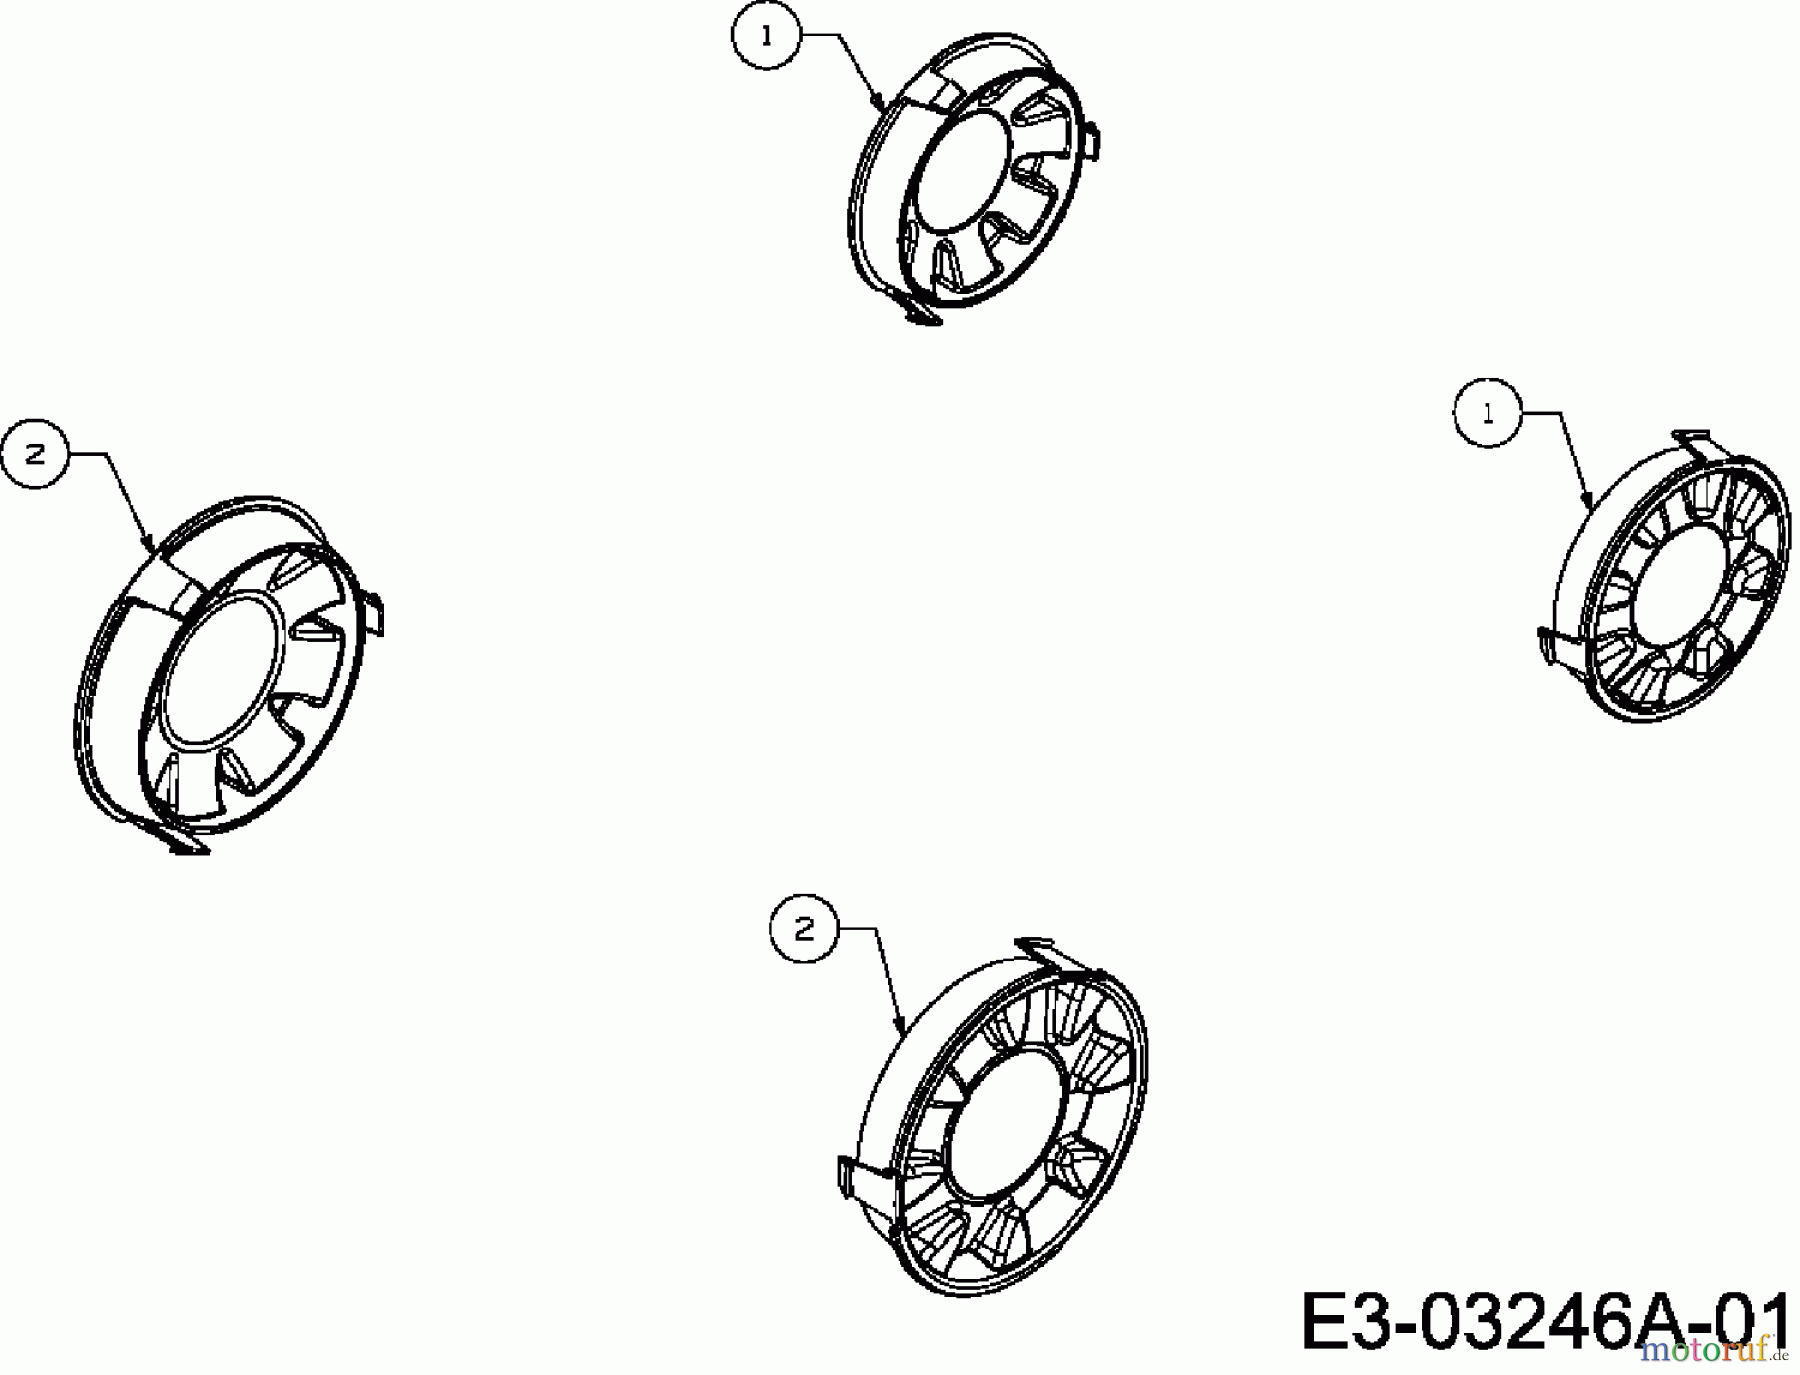  Bolens Elektromäher BL 1033 EP 18C-M4D-684  (2007) Radkappen